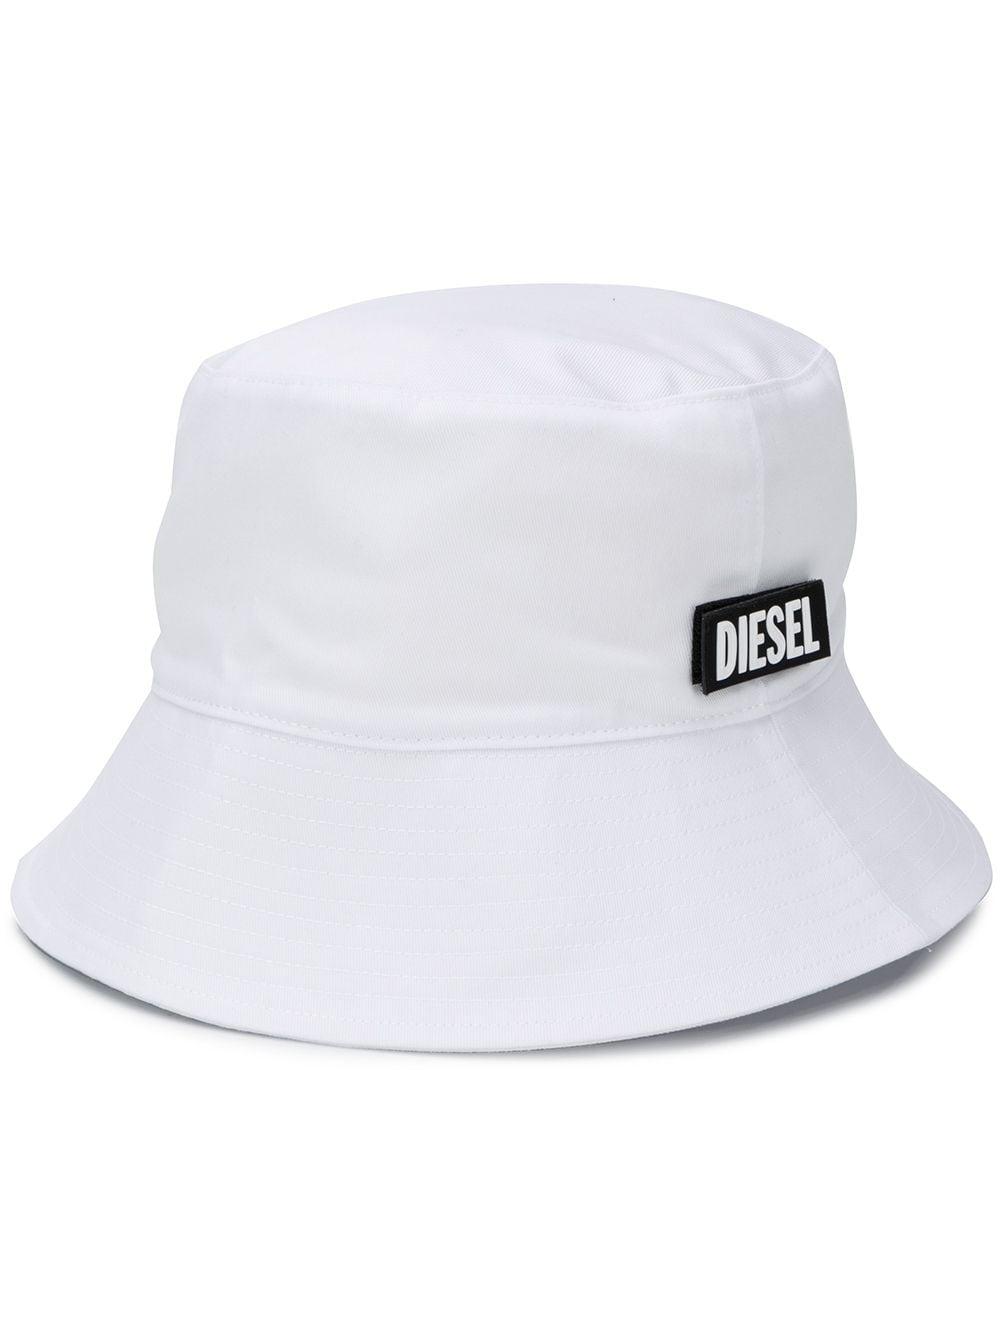 DIESEL Cotton Logo Patch Bucket Hat in White for Men - Lyst